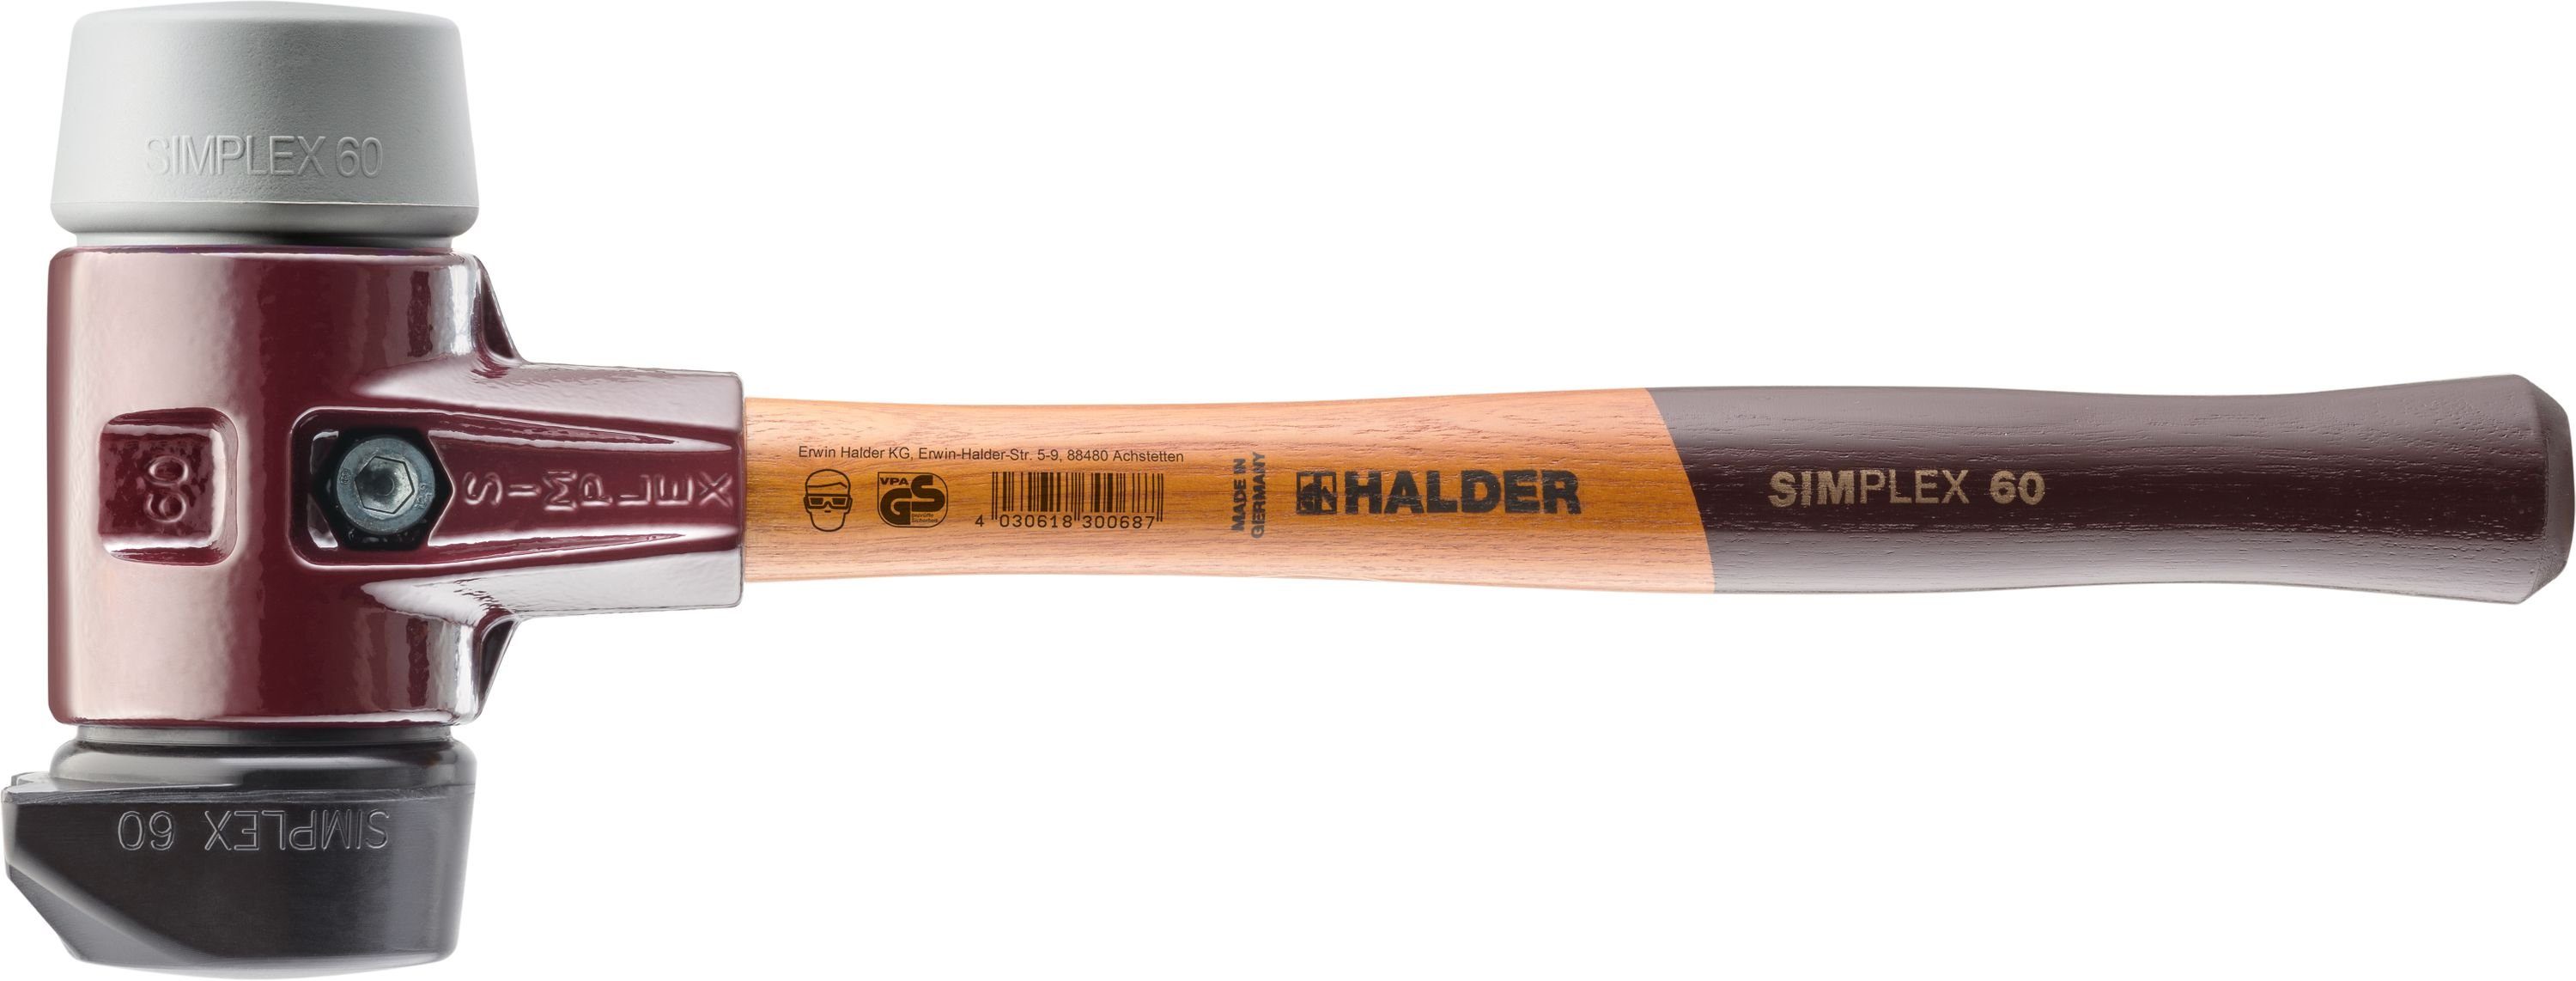 Halder KG Hammer mittelhart Standfuß Simplex-Schonhammer mittelhart 3023.260 Halder 2 Schlageinsätzen und mit - Gummi TPE & 60mm